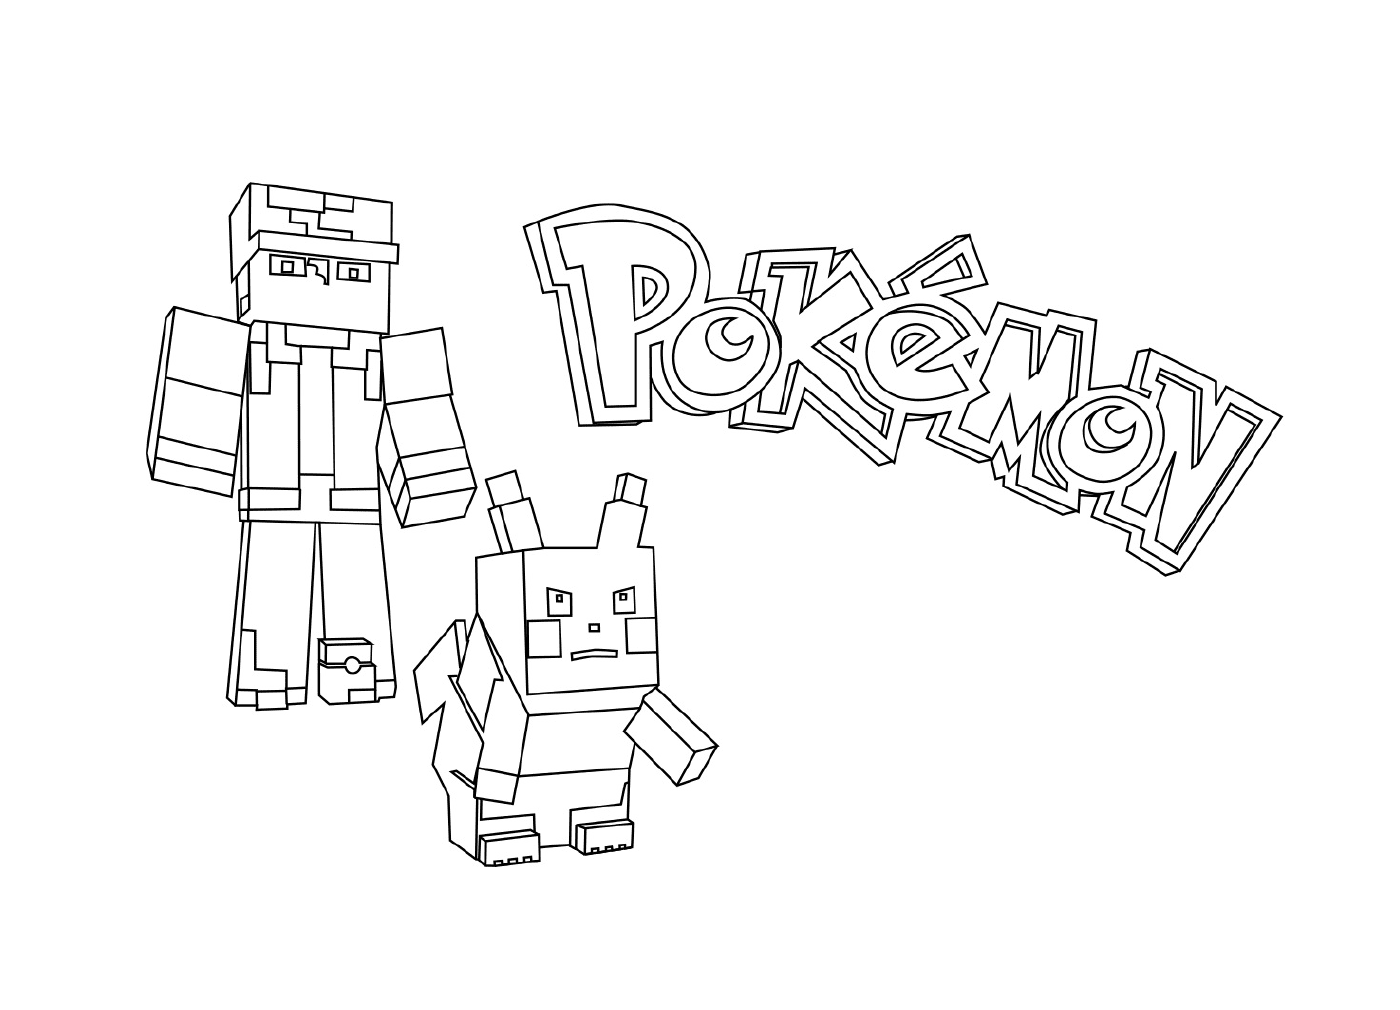  Personaggio Pikachu e Minecraft 